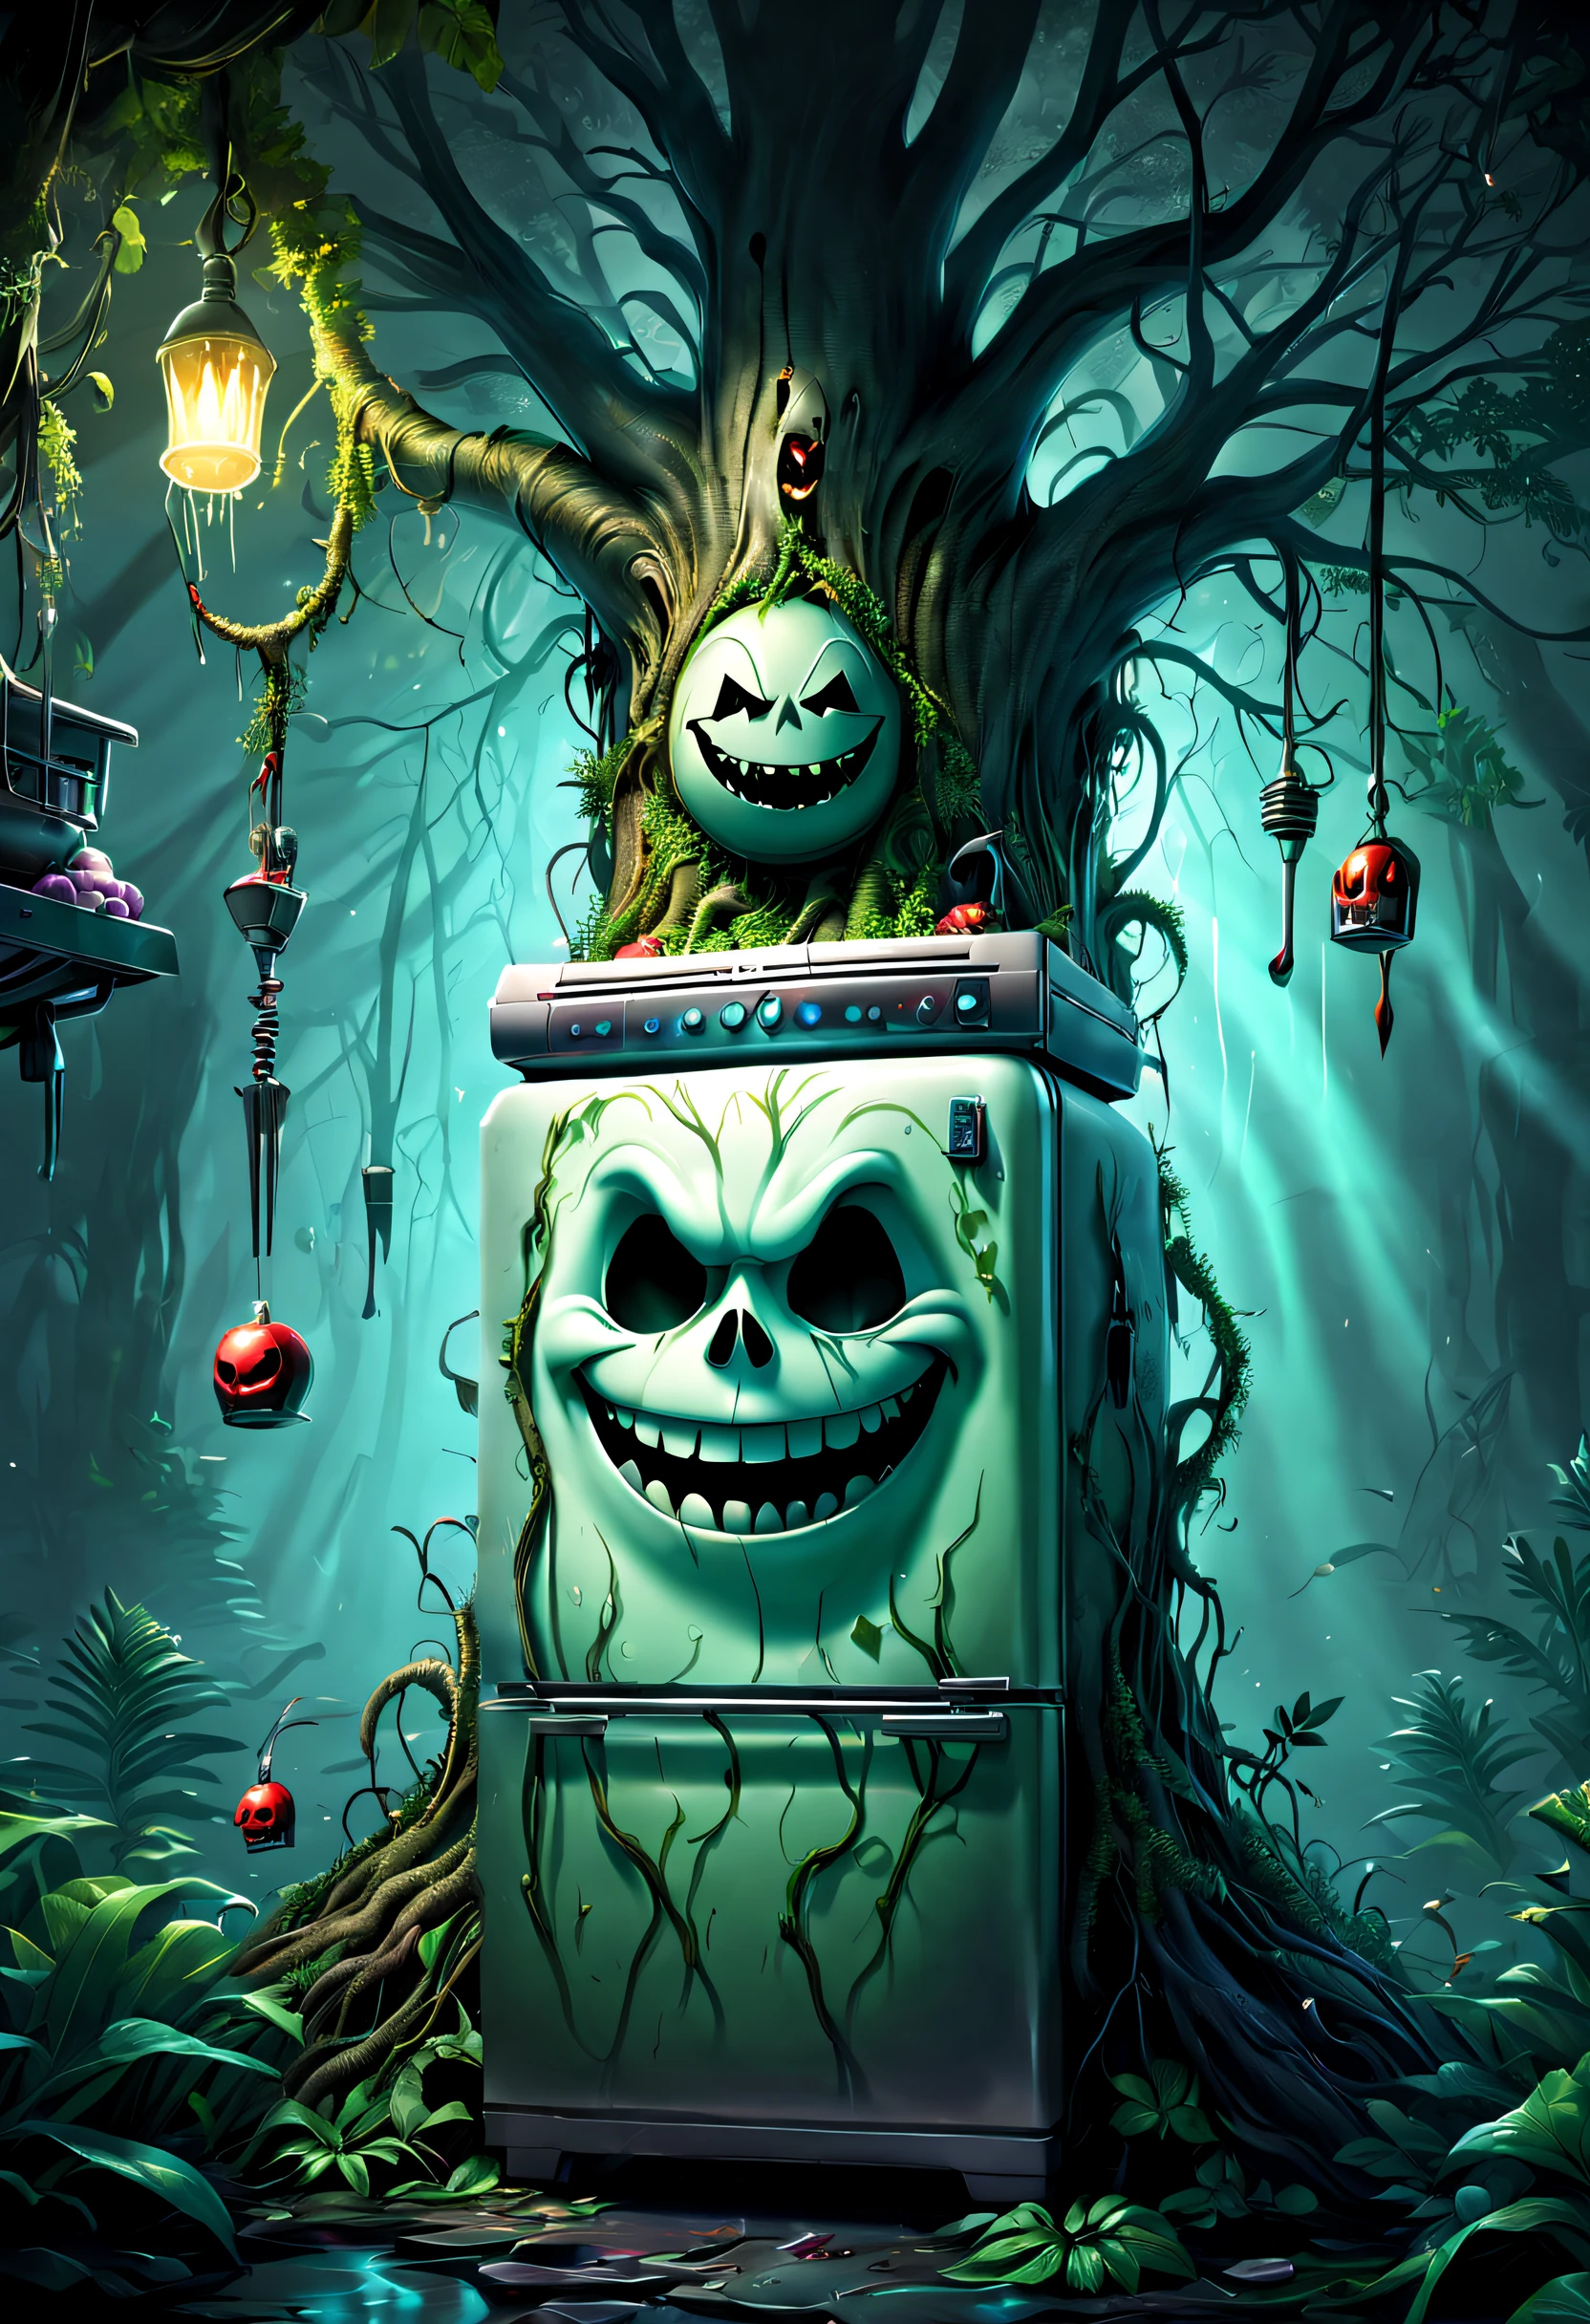 幽霊の冷蔵庫が木に生える，(冷蔵庫は邪悪な笑みを浮かべる:1.5)，邪悪な笑み，魔法の木，魔法の木，木は台所用品で覆われています，壮大なシュールなアートスタイル,壮大なゴシックアートスタイル,壮大なデジタル ファンタジー イラスト,壮大な神話のアート スタイル,壮大なファンタジーアートスタイル， 背景の魔法のジャングル, SFアート, ，素晴らしい，超リアル，スリラー，ゴーストツリー，